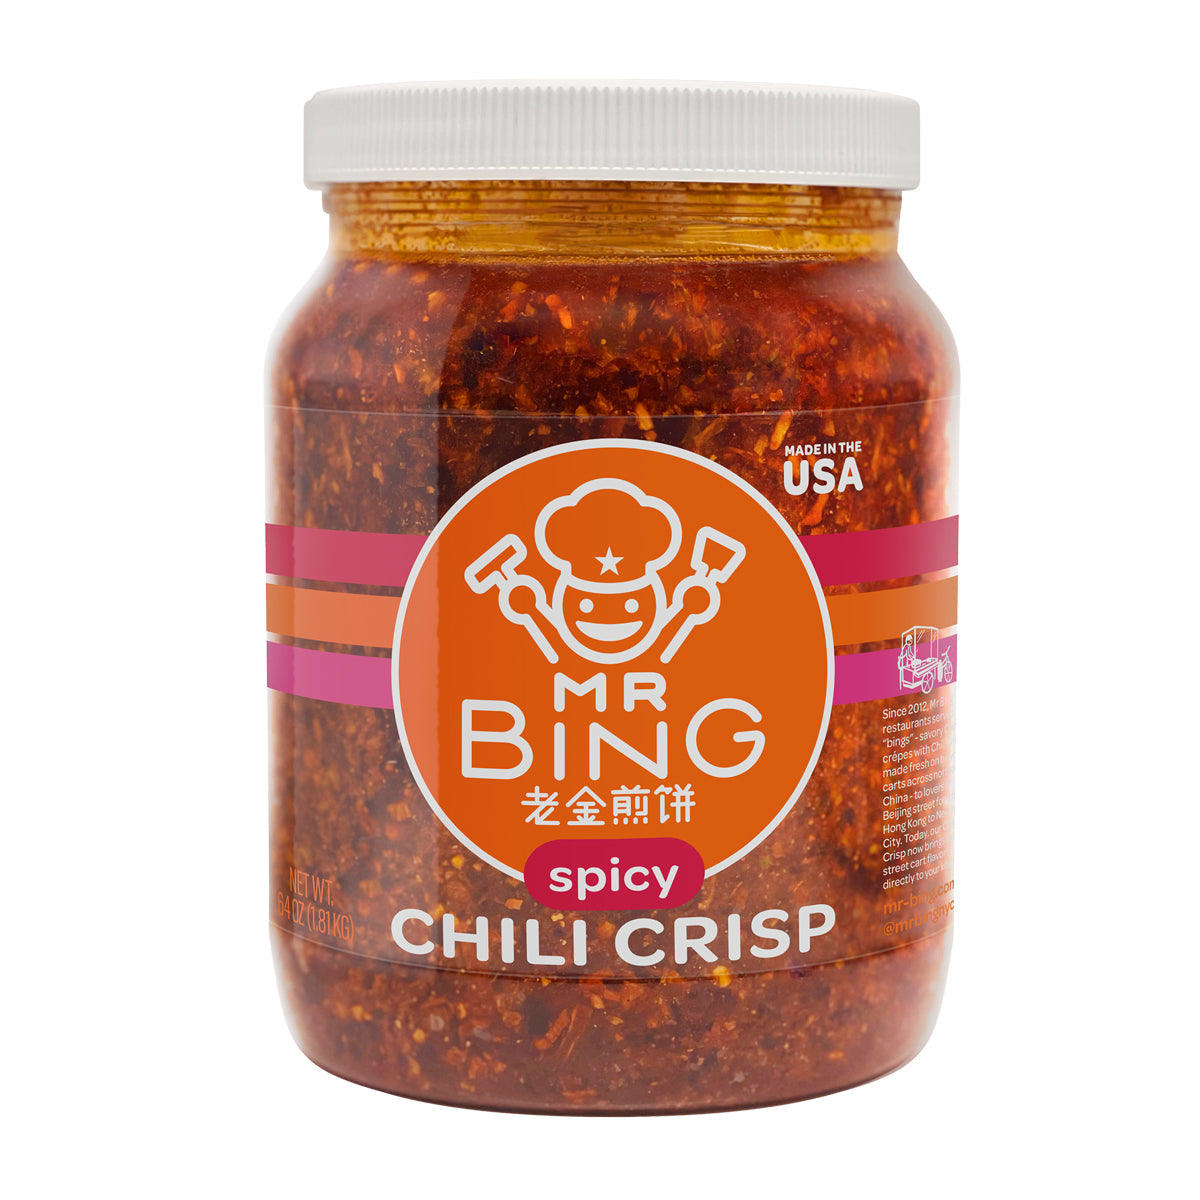 Mr. Bing Spicy Chili Crisp Oil